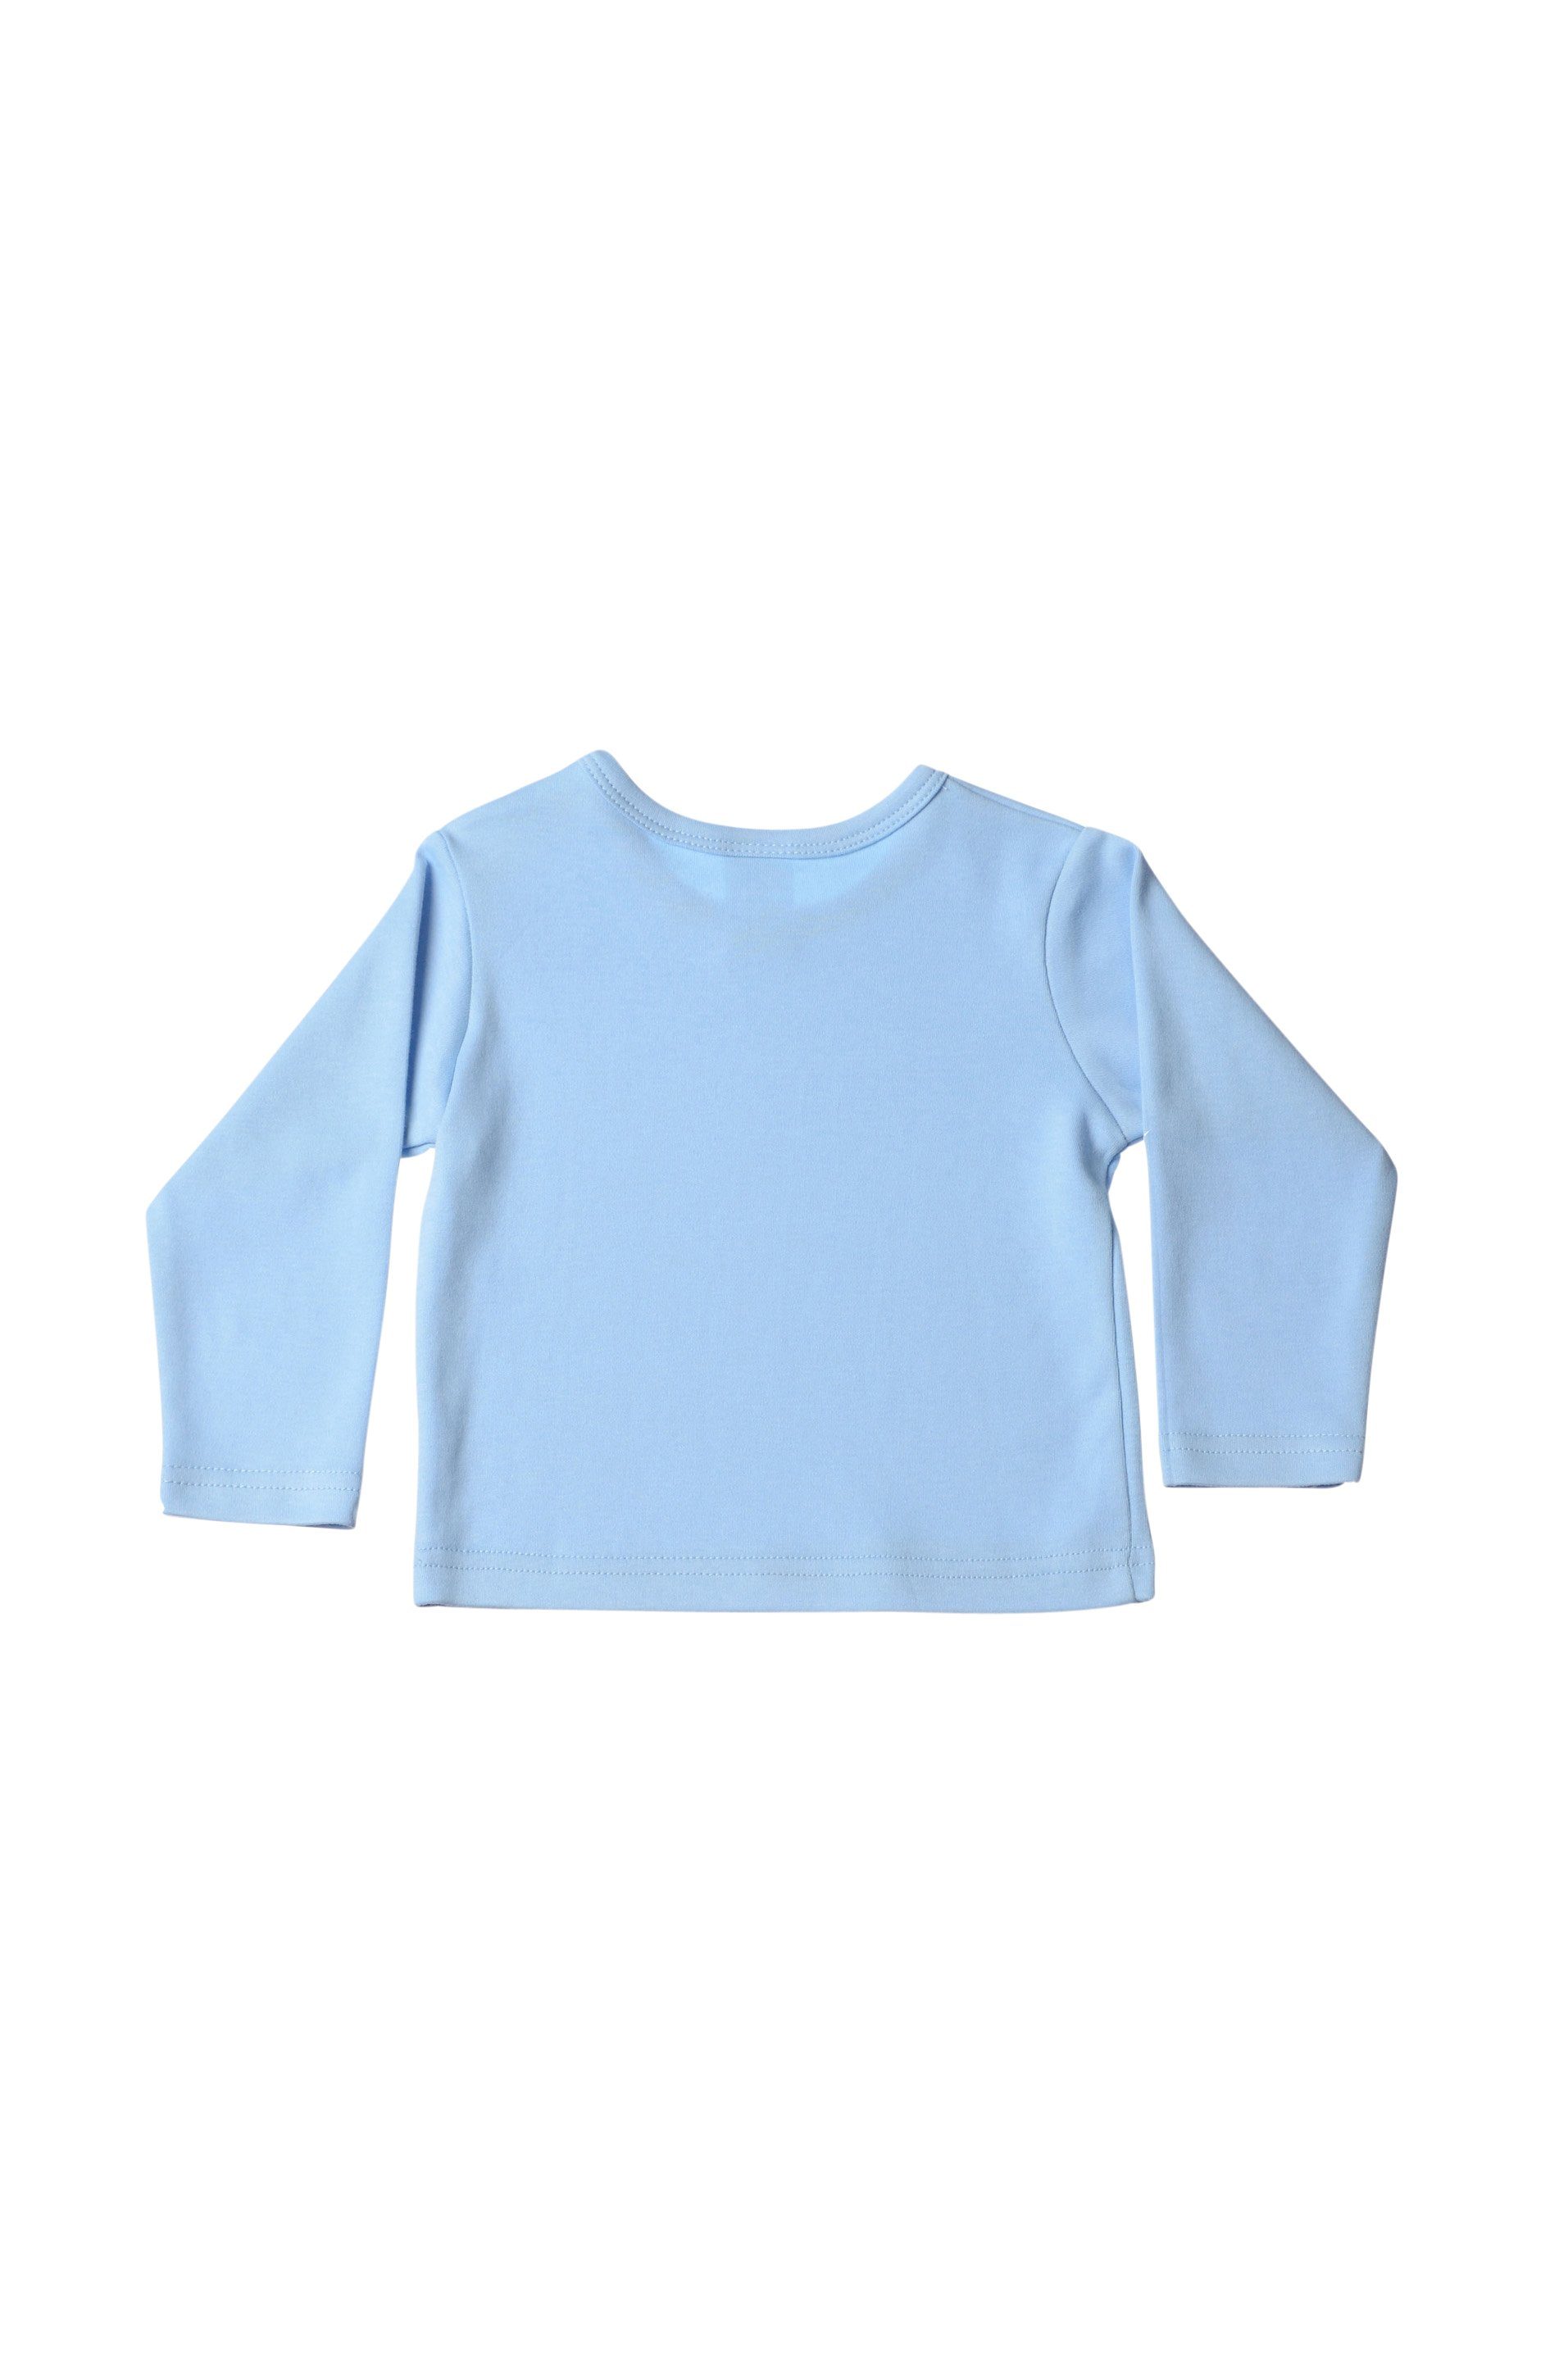 Bio-Baumwolle T-Shirt aus hellblau Liliput